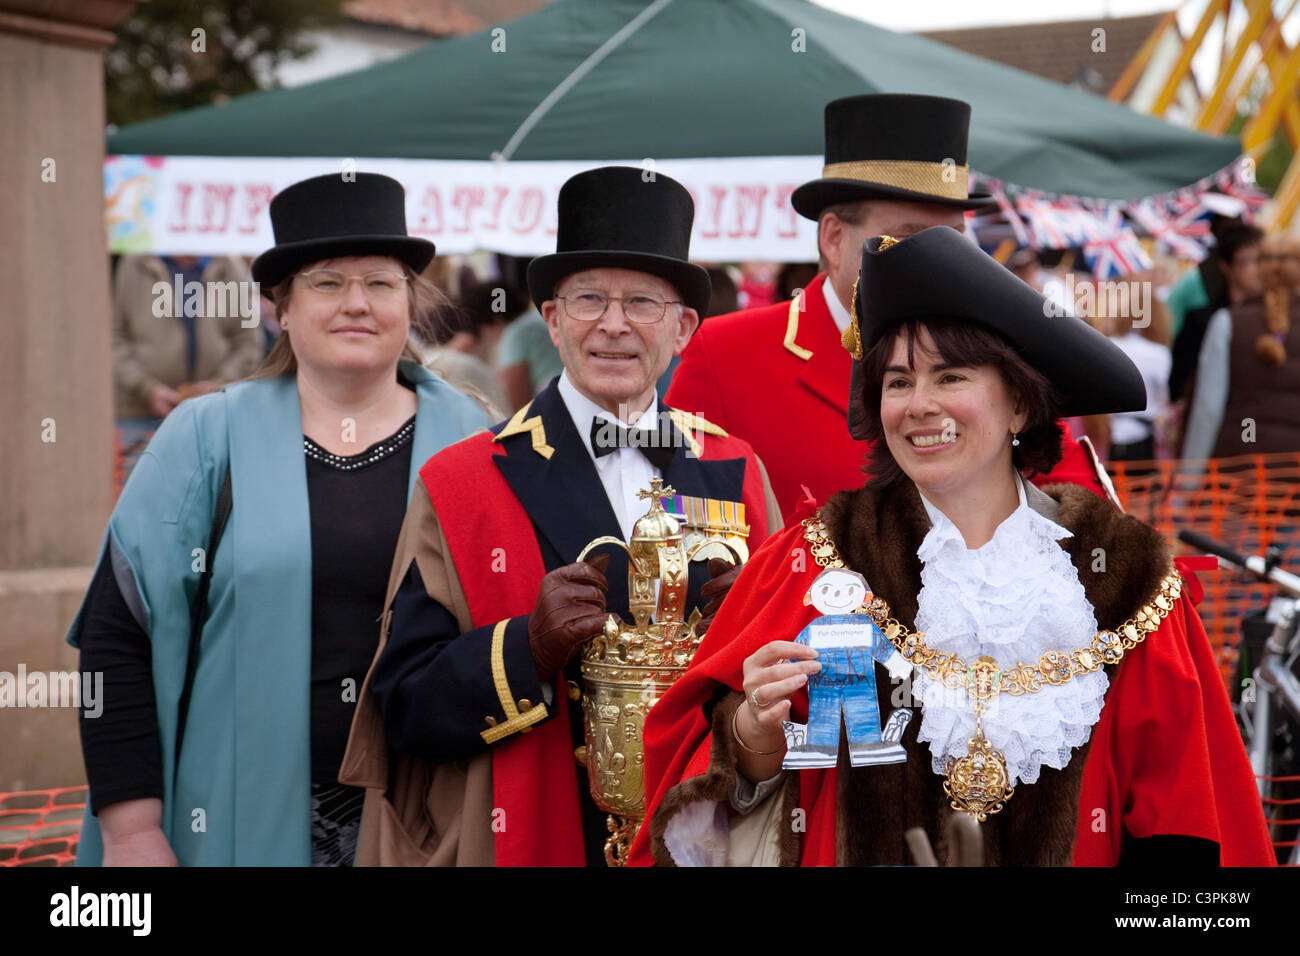 Der Bürgermeister von Cambridge und anderen lokalen Würdenträgern auf Reach Dorf Messe erreichen, Cambridgeshire, Großbritannien Stockfoto